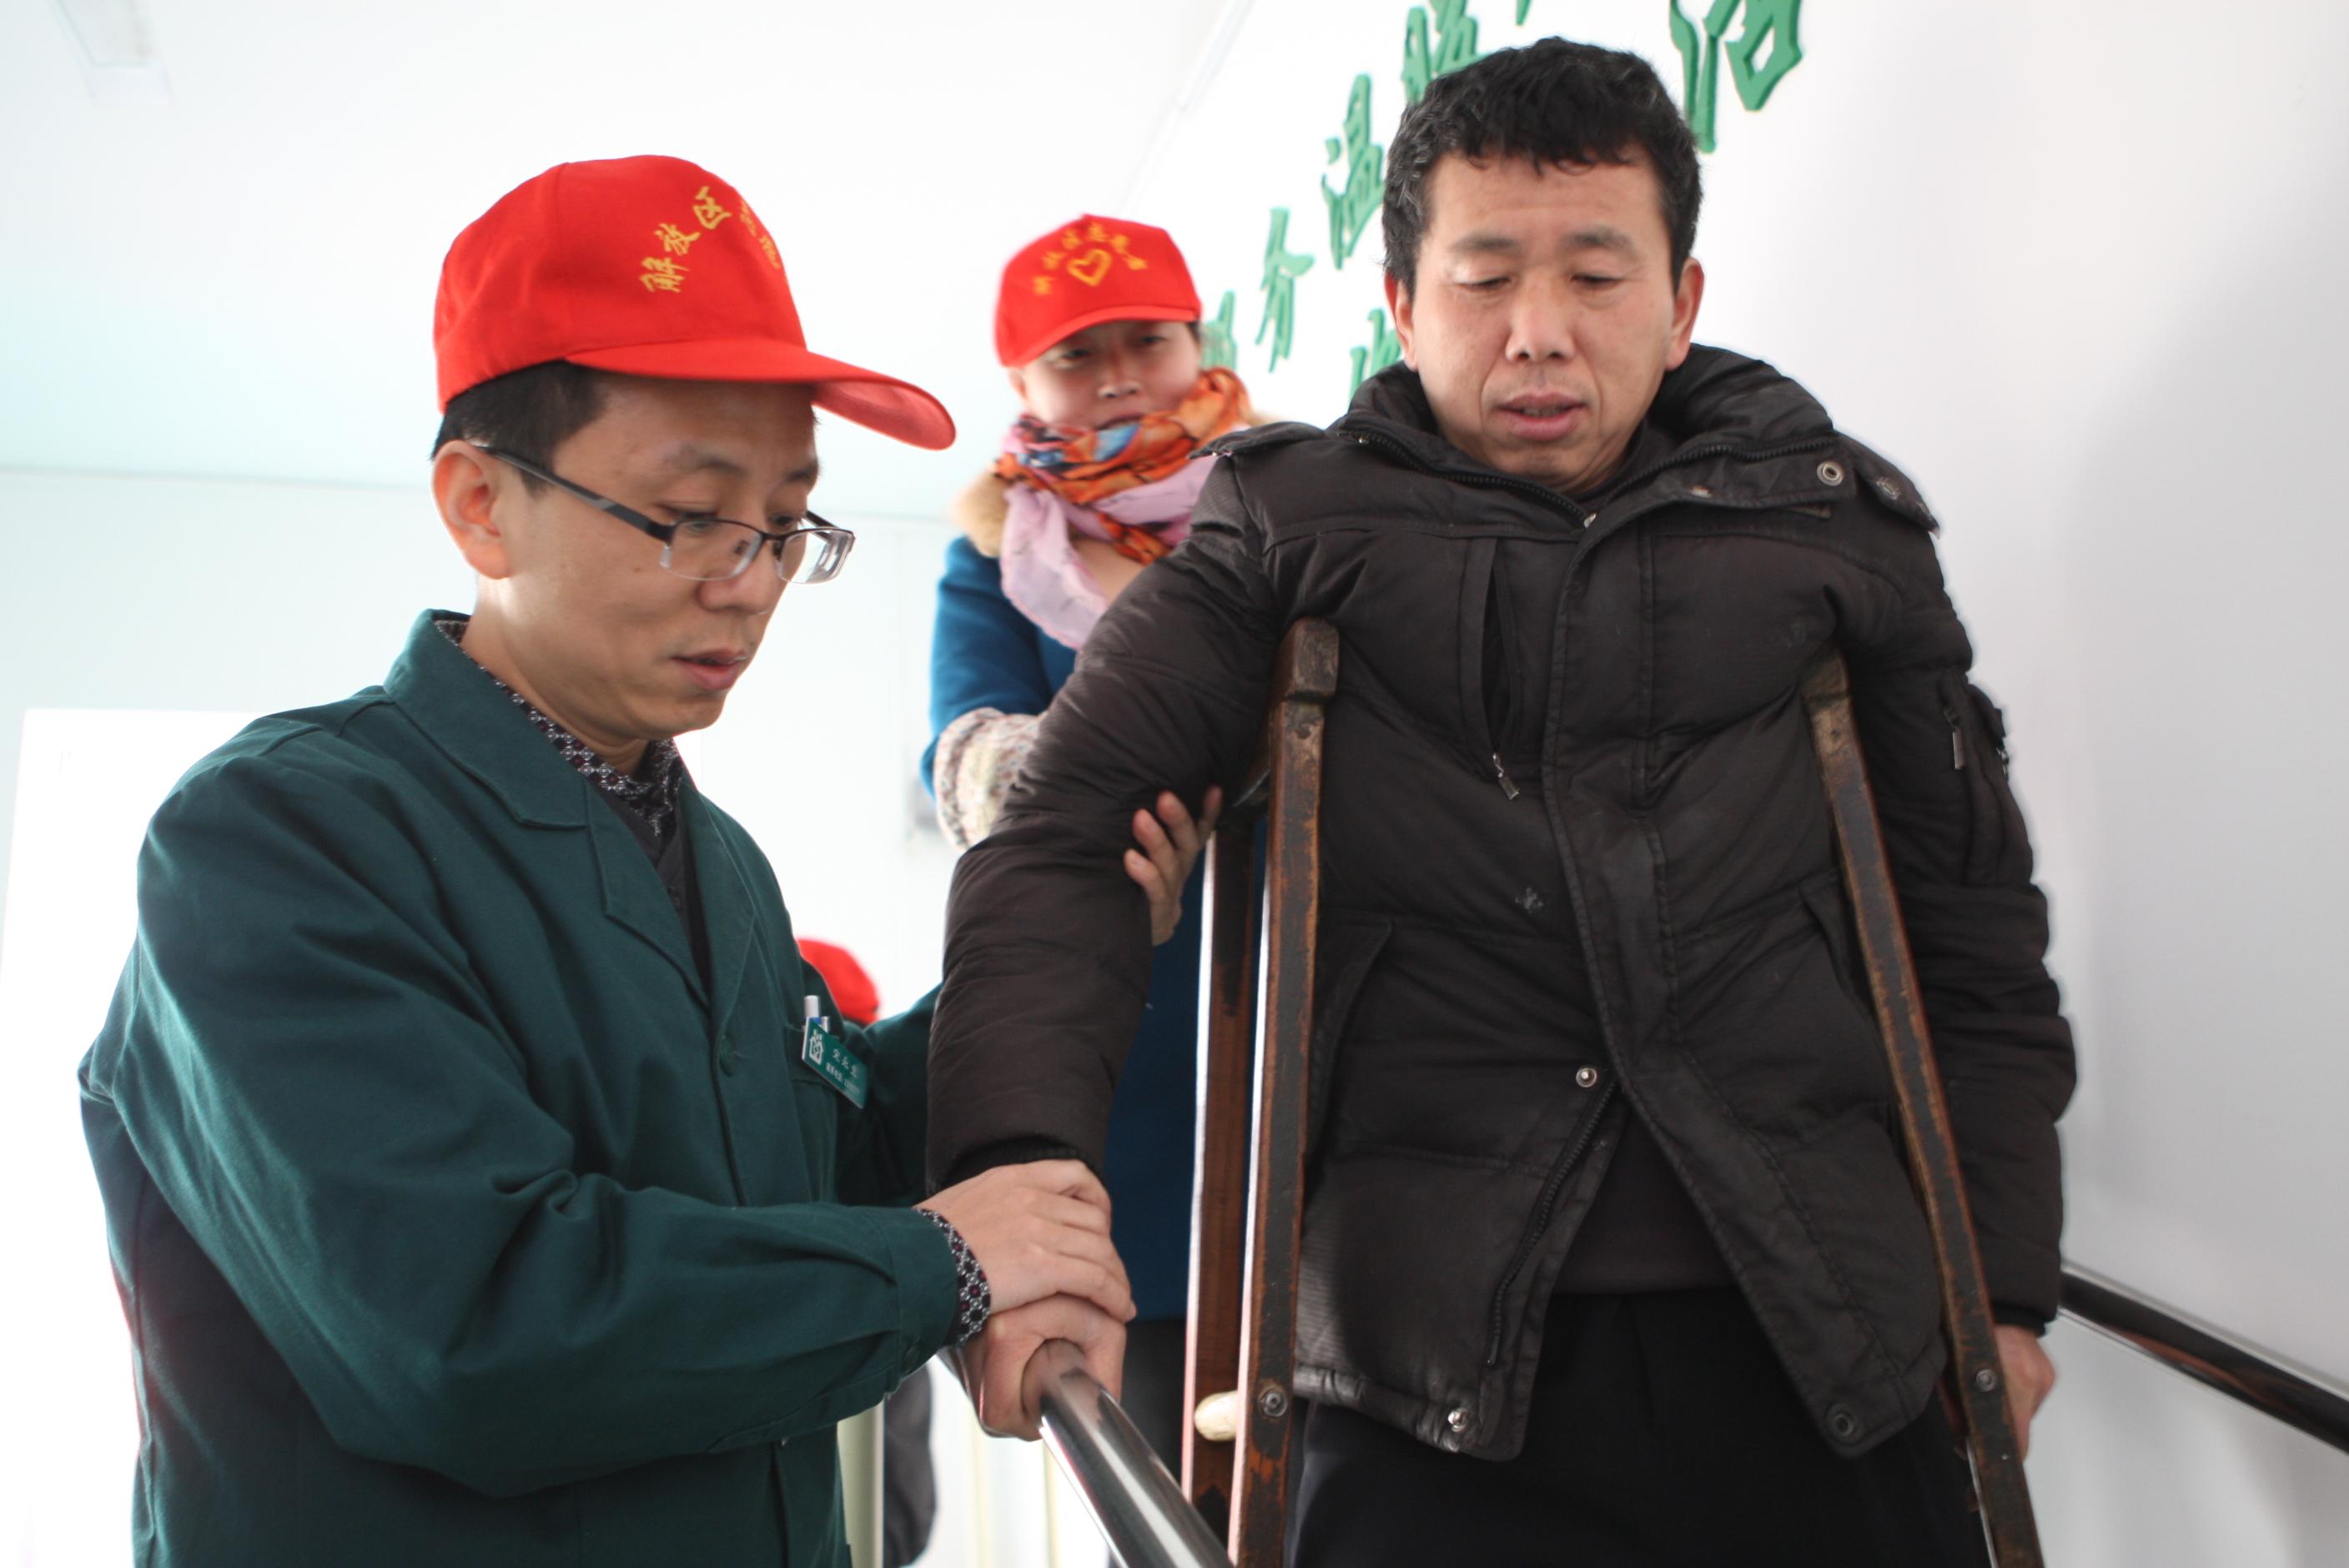 图片新闻:国际残疾人日帮助残疾人康复_通讯